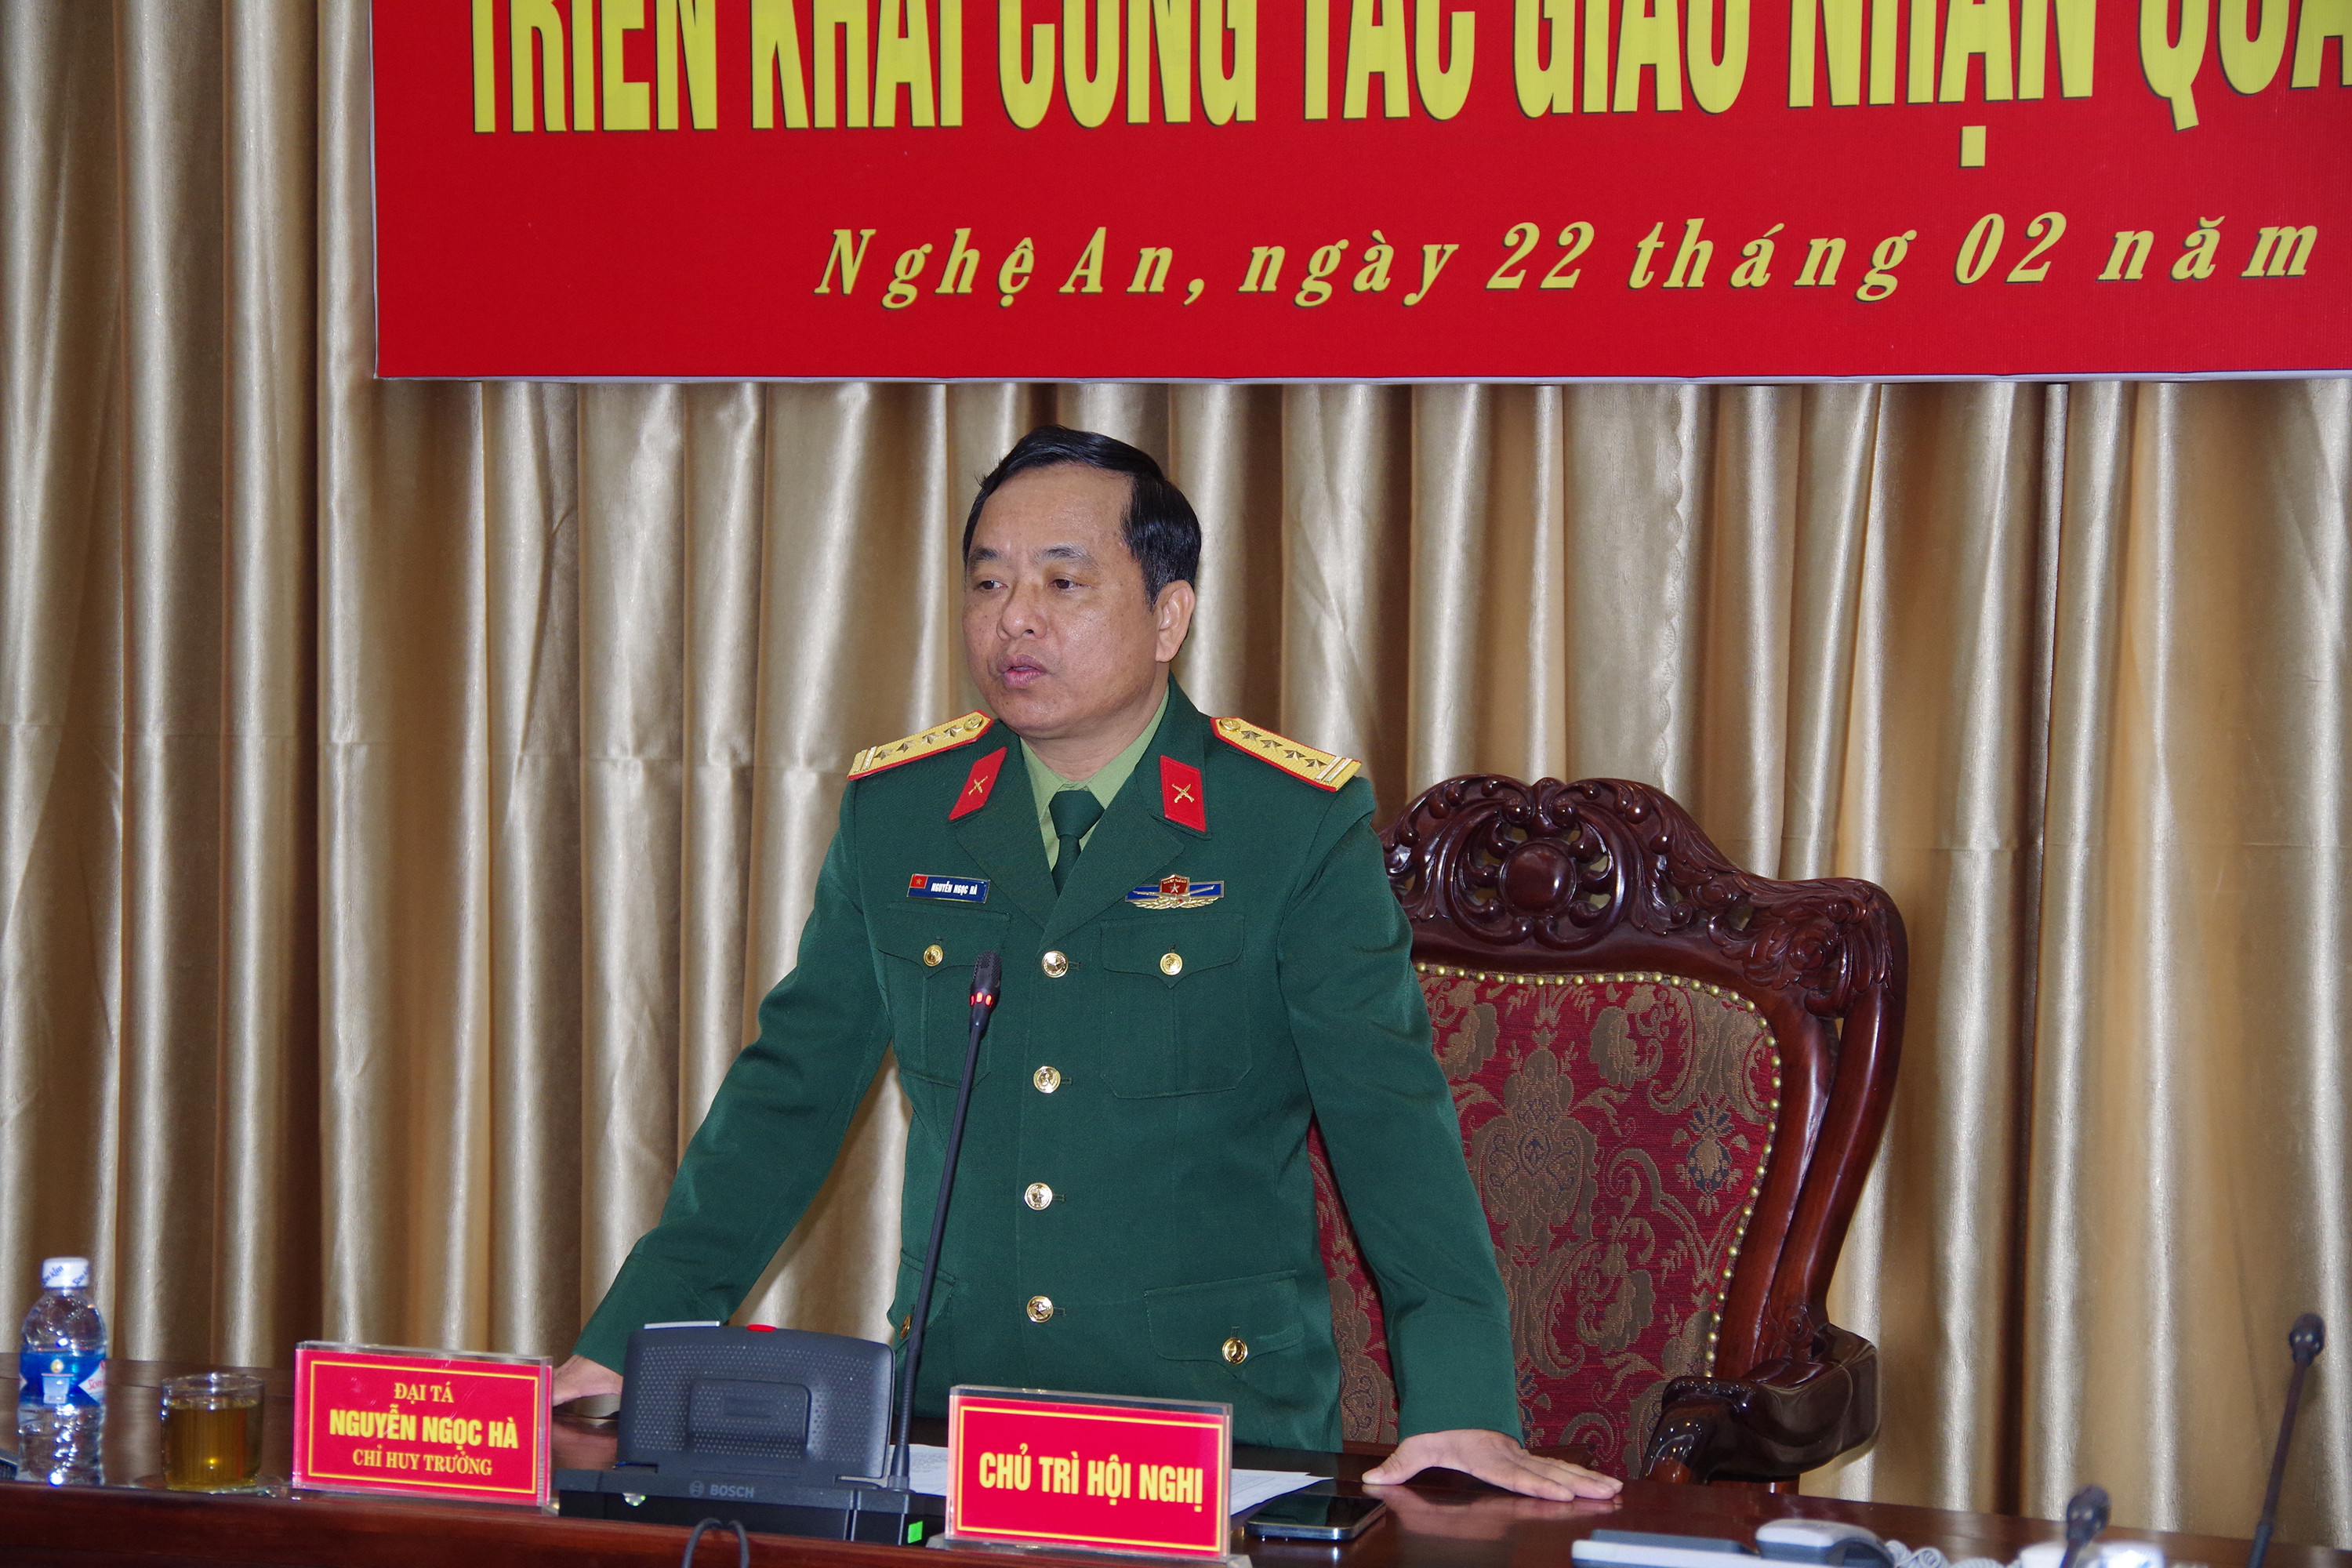 Đại tá Nguyễn Ngọc Hà, Ủy viên Ban thường vụ tỉnh ủy, Phó Chủ tịch Thường trực hội đồng nghĩa vụ quân sự, Chỉ huy trưởng Bộ CHQS tỉnh kết luận hội nghị